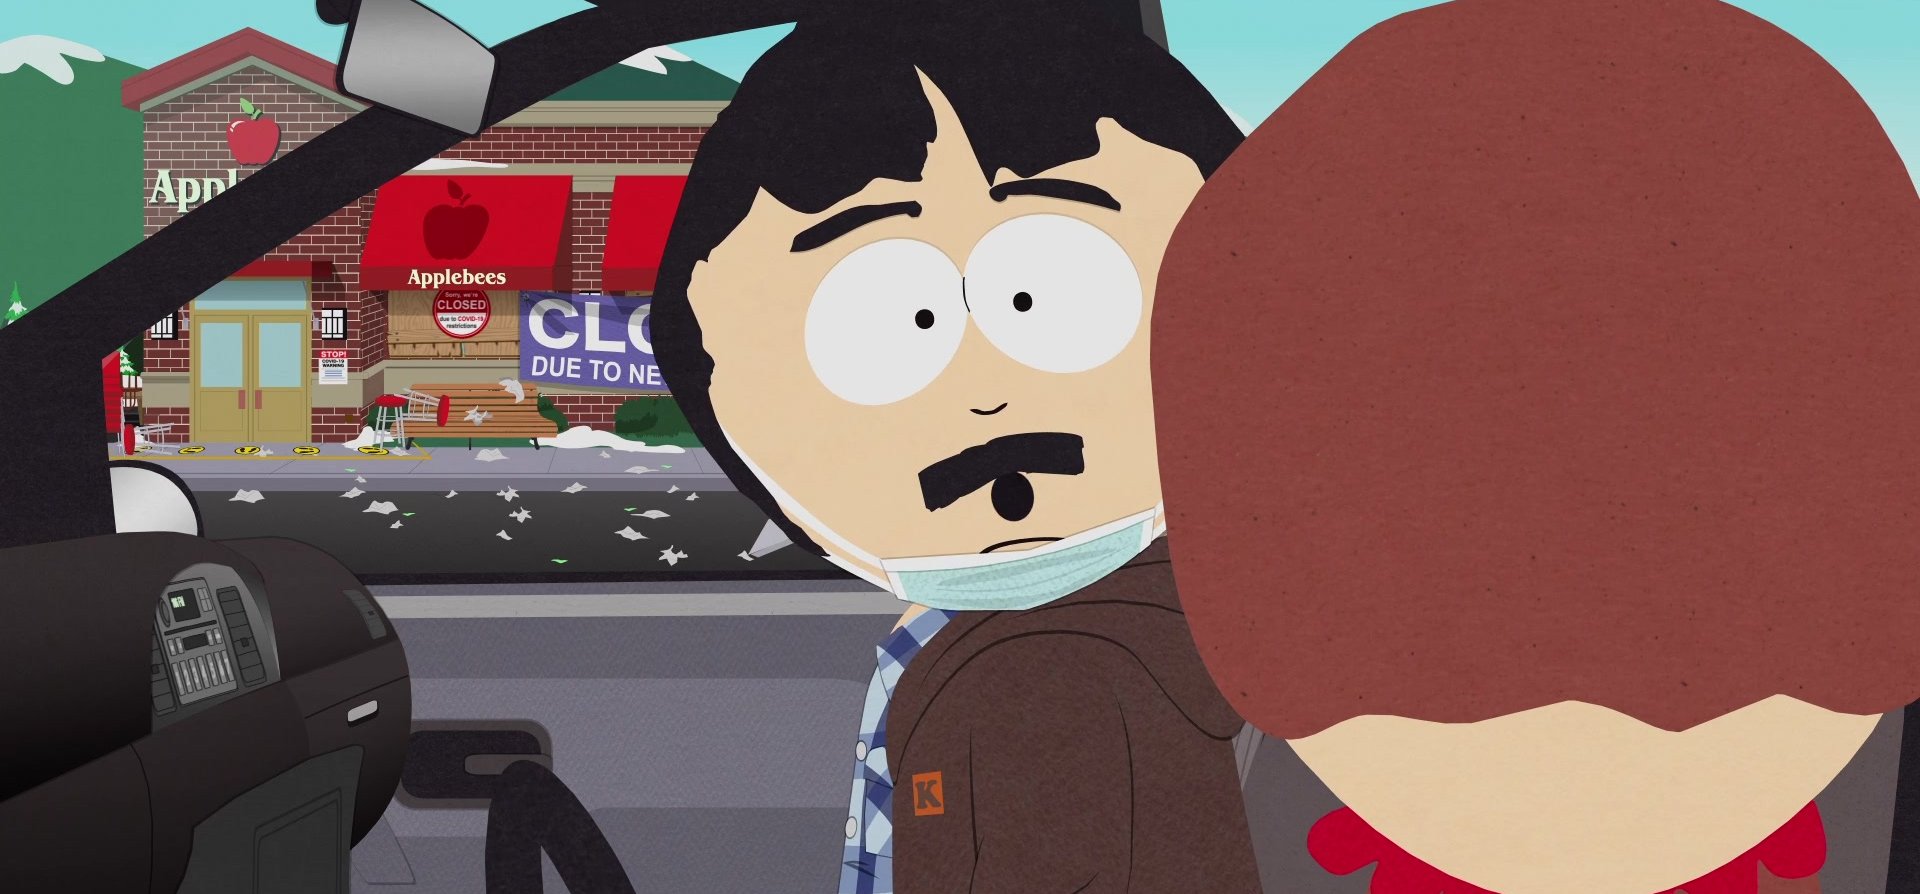 A South Park még a koronavírusból is viccet csinált – kritika